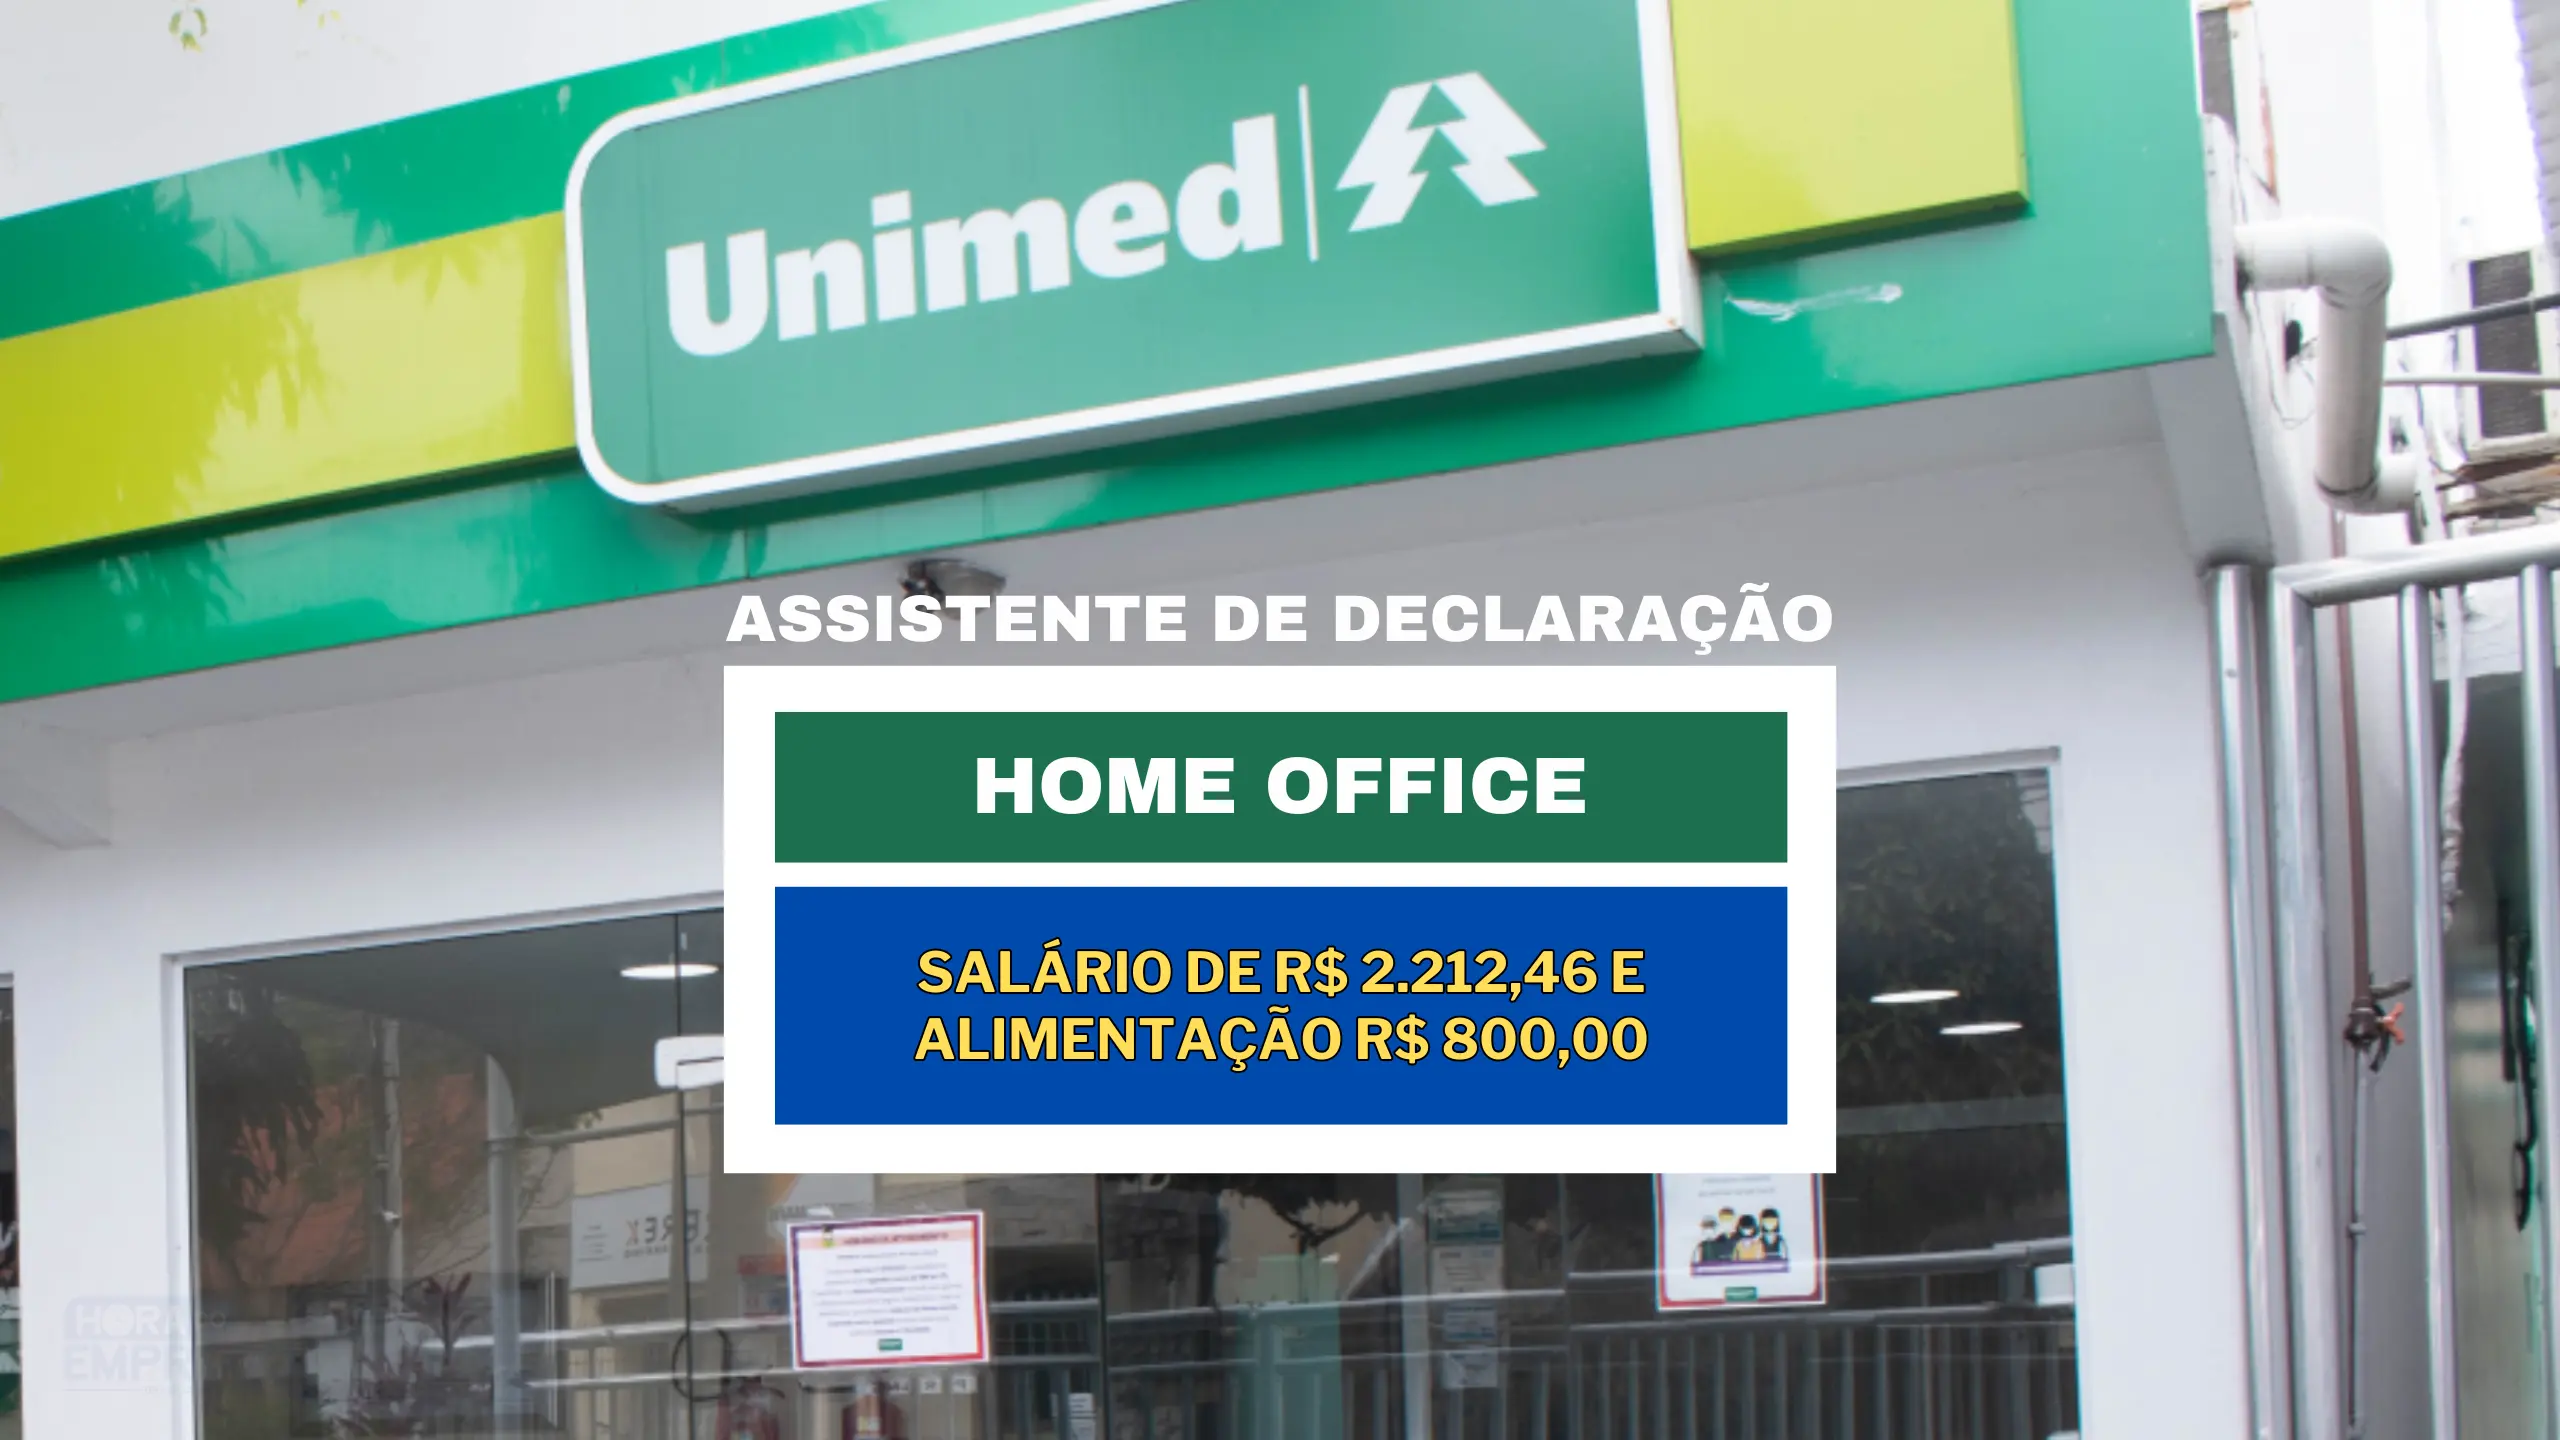 SEM EXPERIÊNCIA! Unimed abriu vaga HOME OFFICE TEMPORÁRIA com salário de R$ 2.212,46 e Alimentação R$ 800,00 para Assistente de Declaração